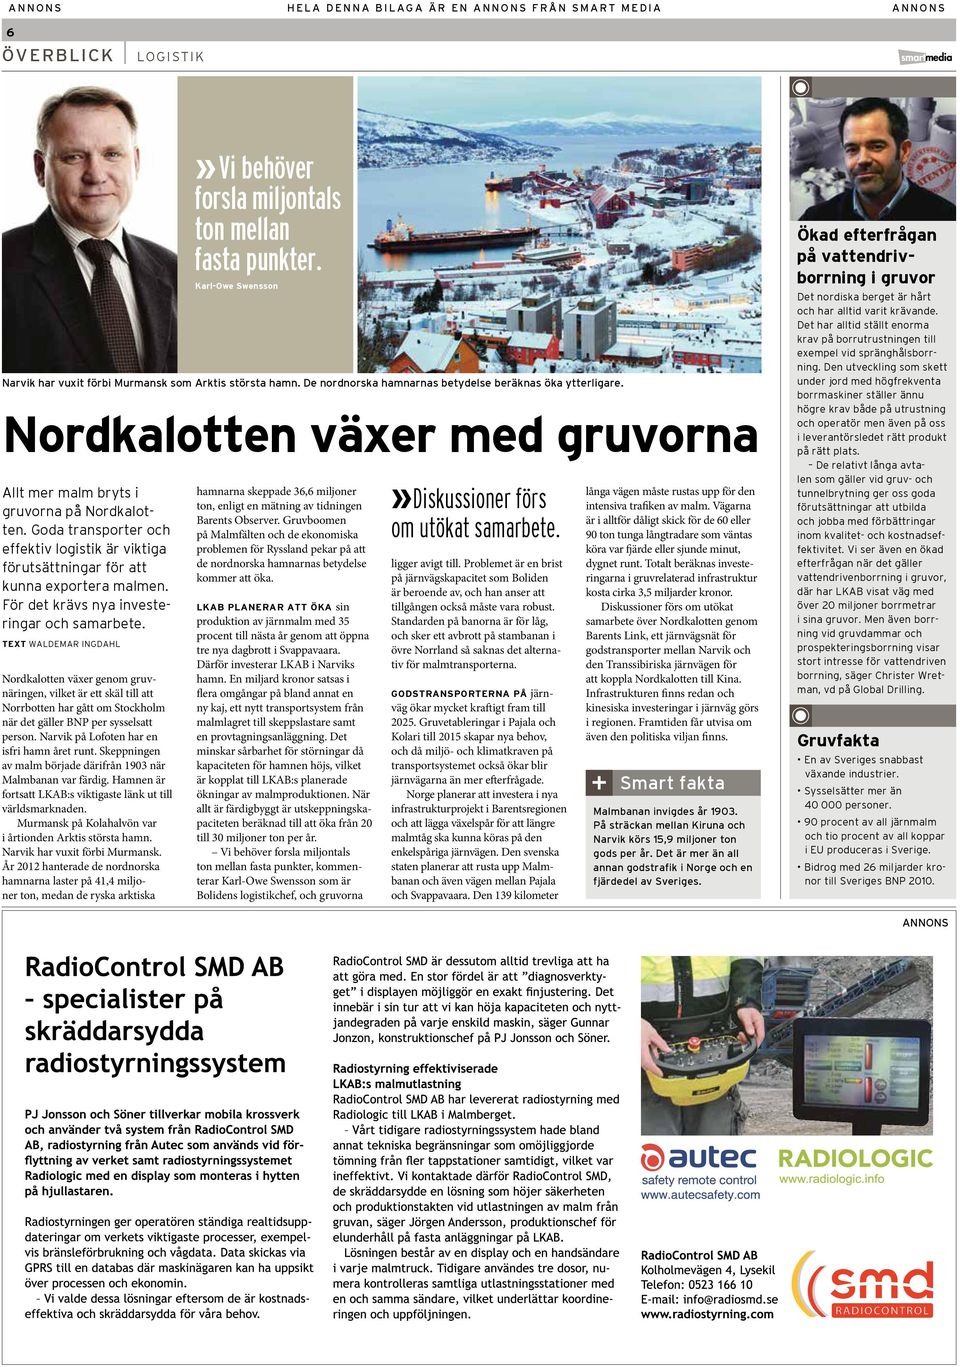 TEXT WALDEMAR INGDAHL Nordkalotten växer genom gruvnäringen, vilket är ett skäl till att Norrbotten har gått om Stockholm när det gäller BNP per sysselsatt person.